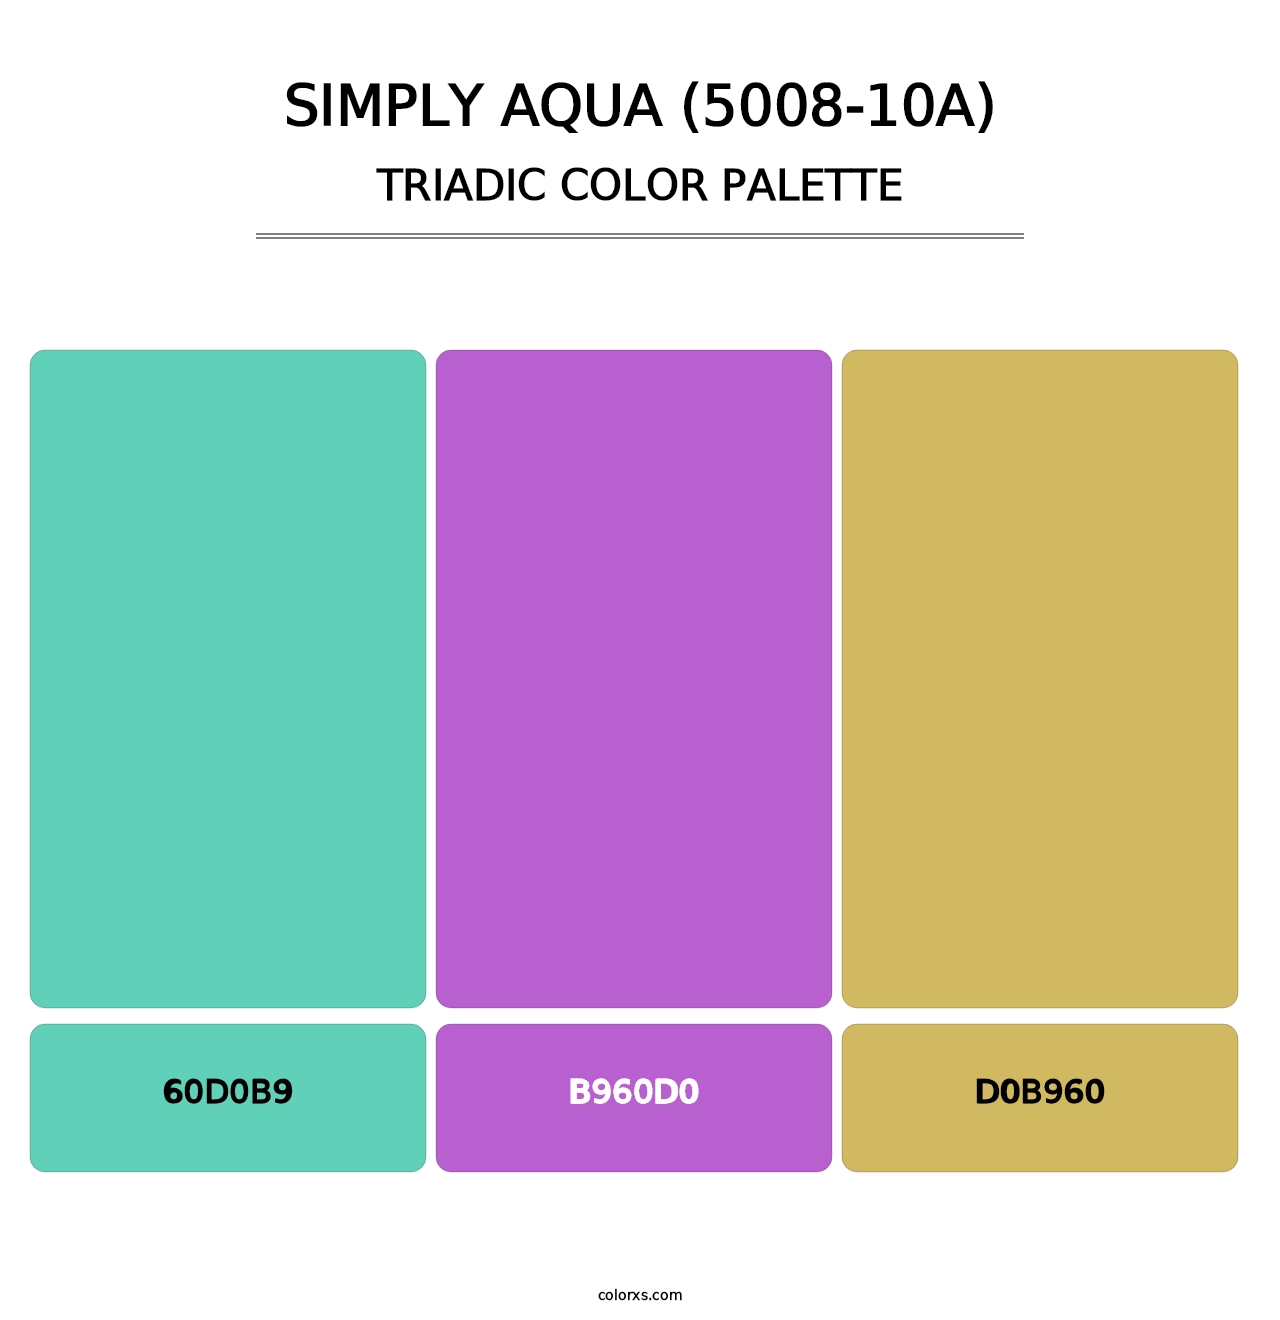 Simply Aqua (5008-10A) - Triadic Color Palette